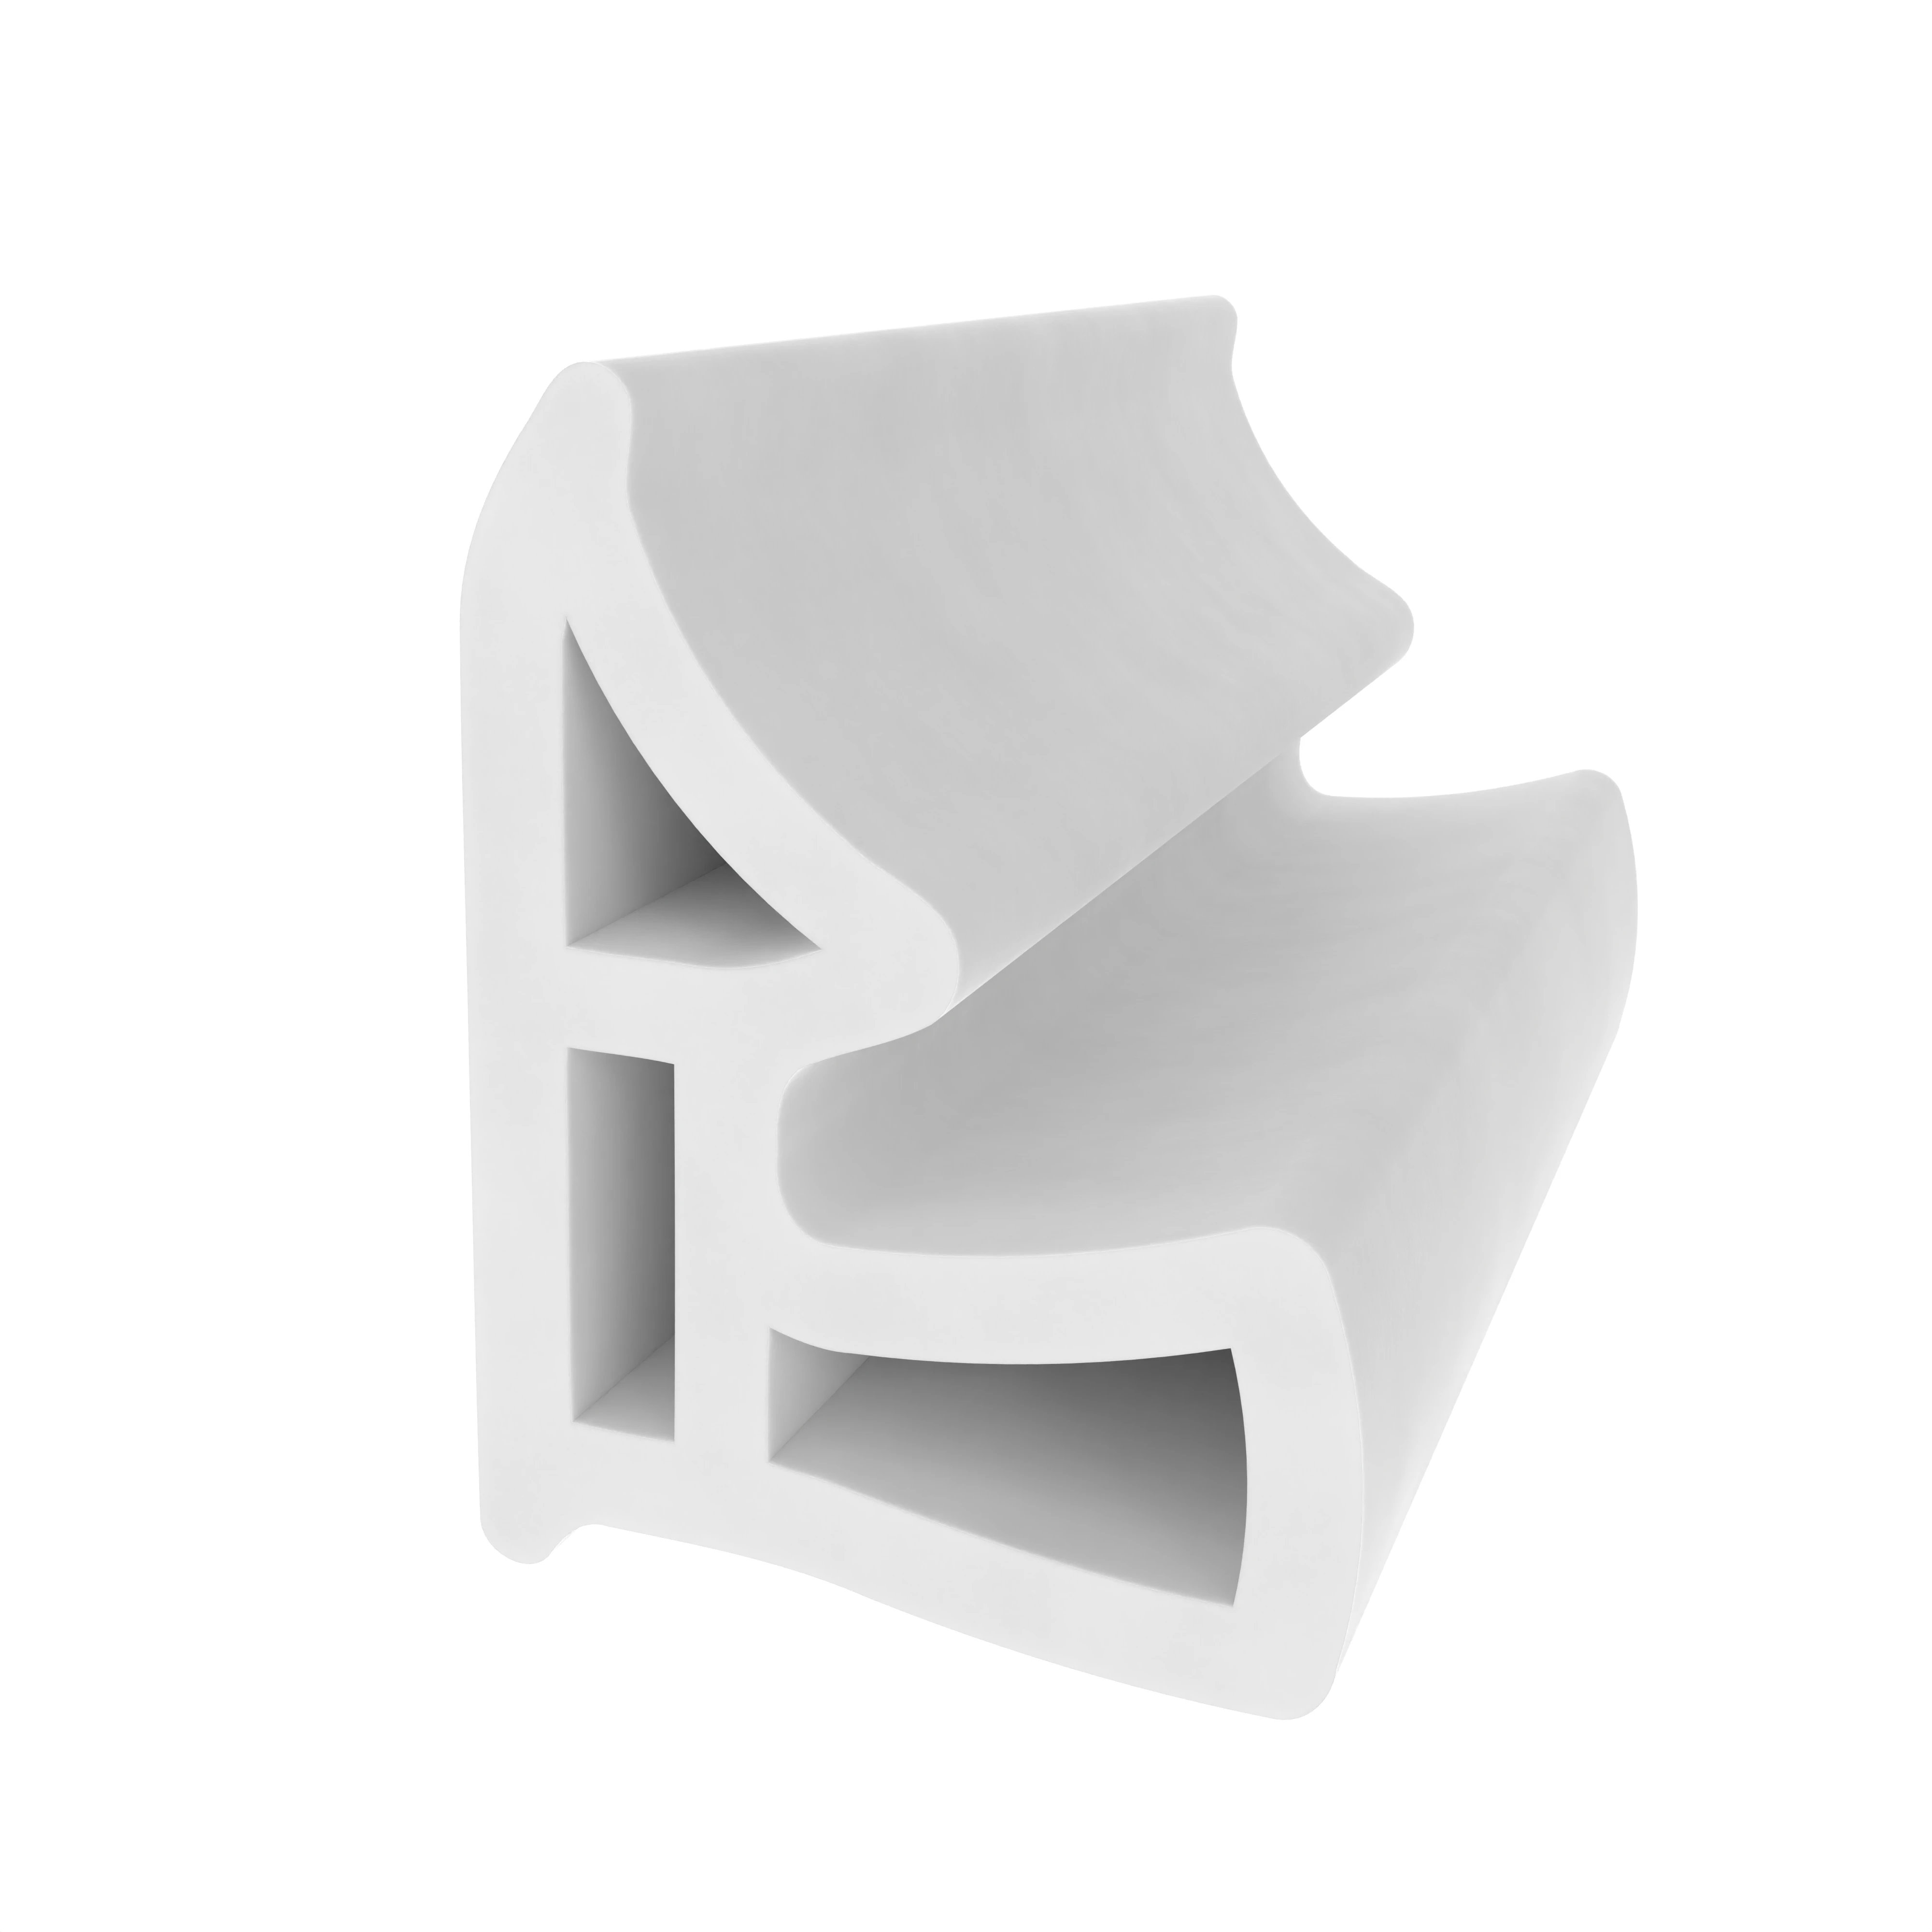 Stahlzargendichtung für hinterschrnittene Nut | 13 mm Breite | Farbe: weiß